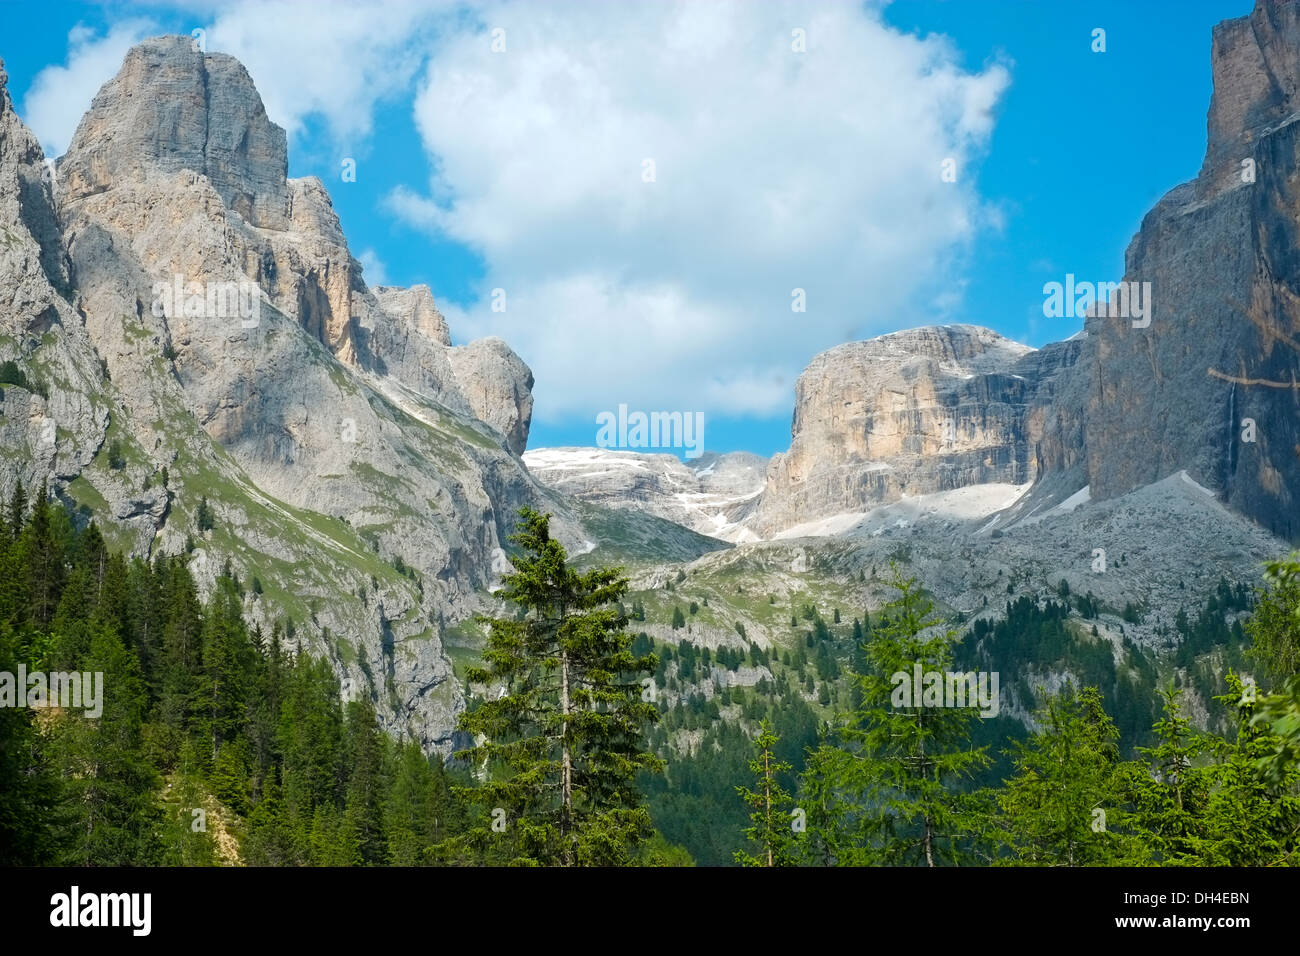 Sella mountain range and Sass Pordoi in Dolomites, Italy Stock Photo